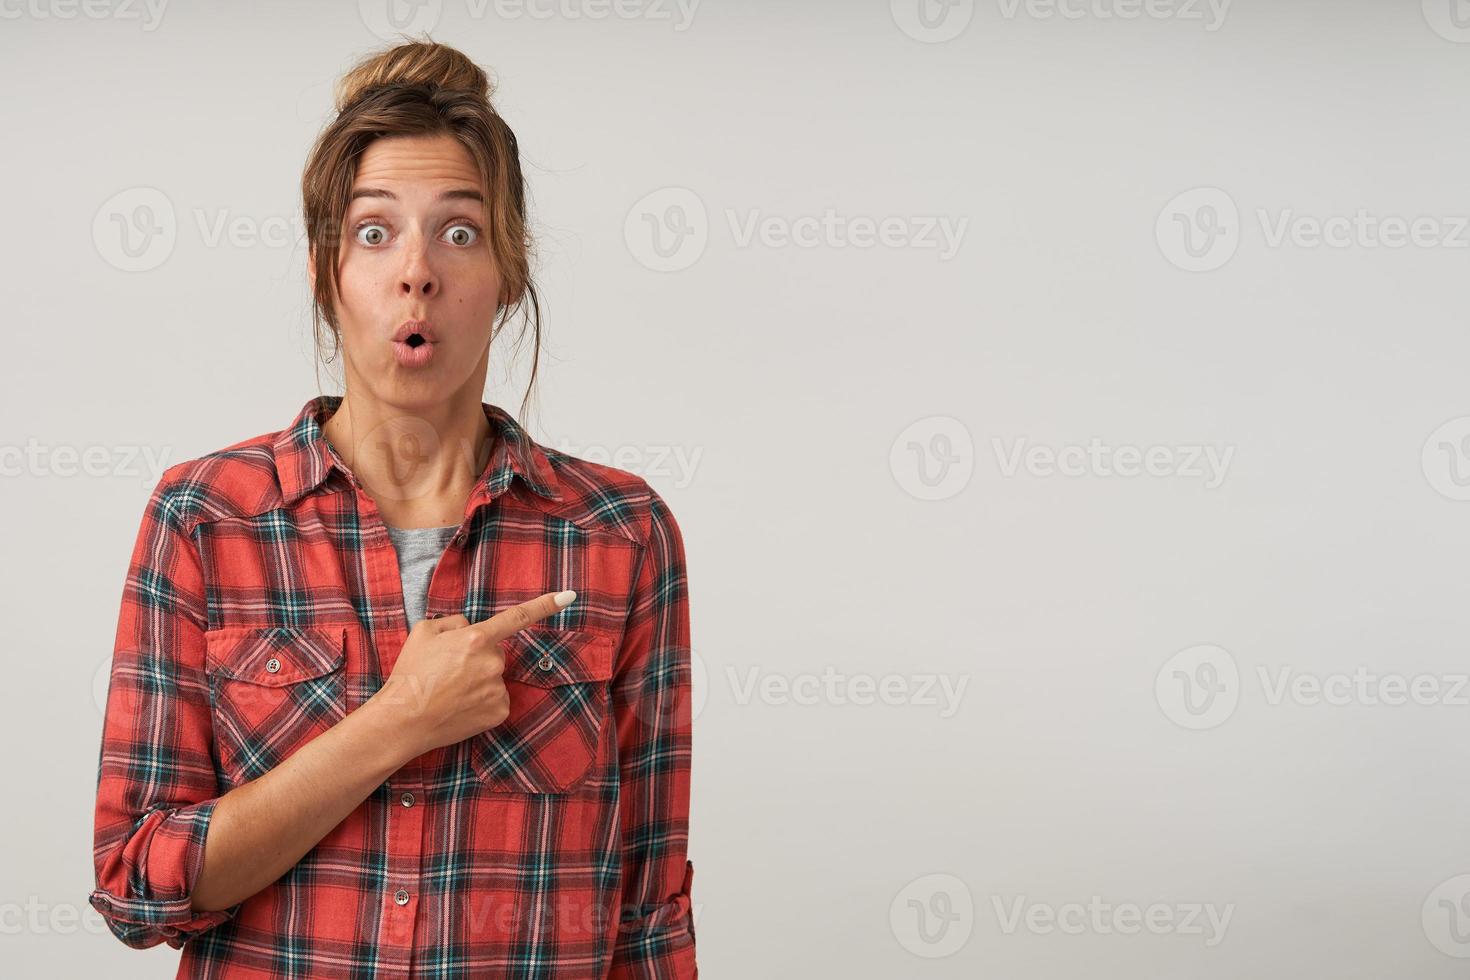 foto de estúdio de jovem mulher espantada em roupas casuais posando sobre fundo branco, apontando com o dedo indicador de lado, olhando para a câmera com os olhos bem abertos